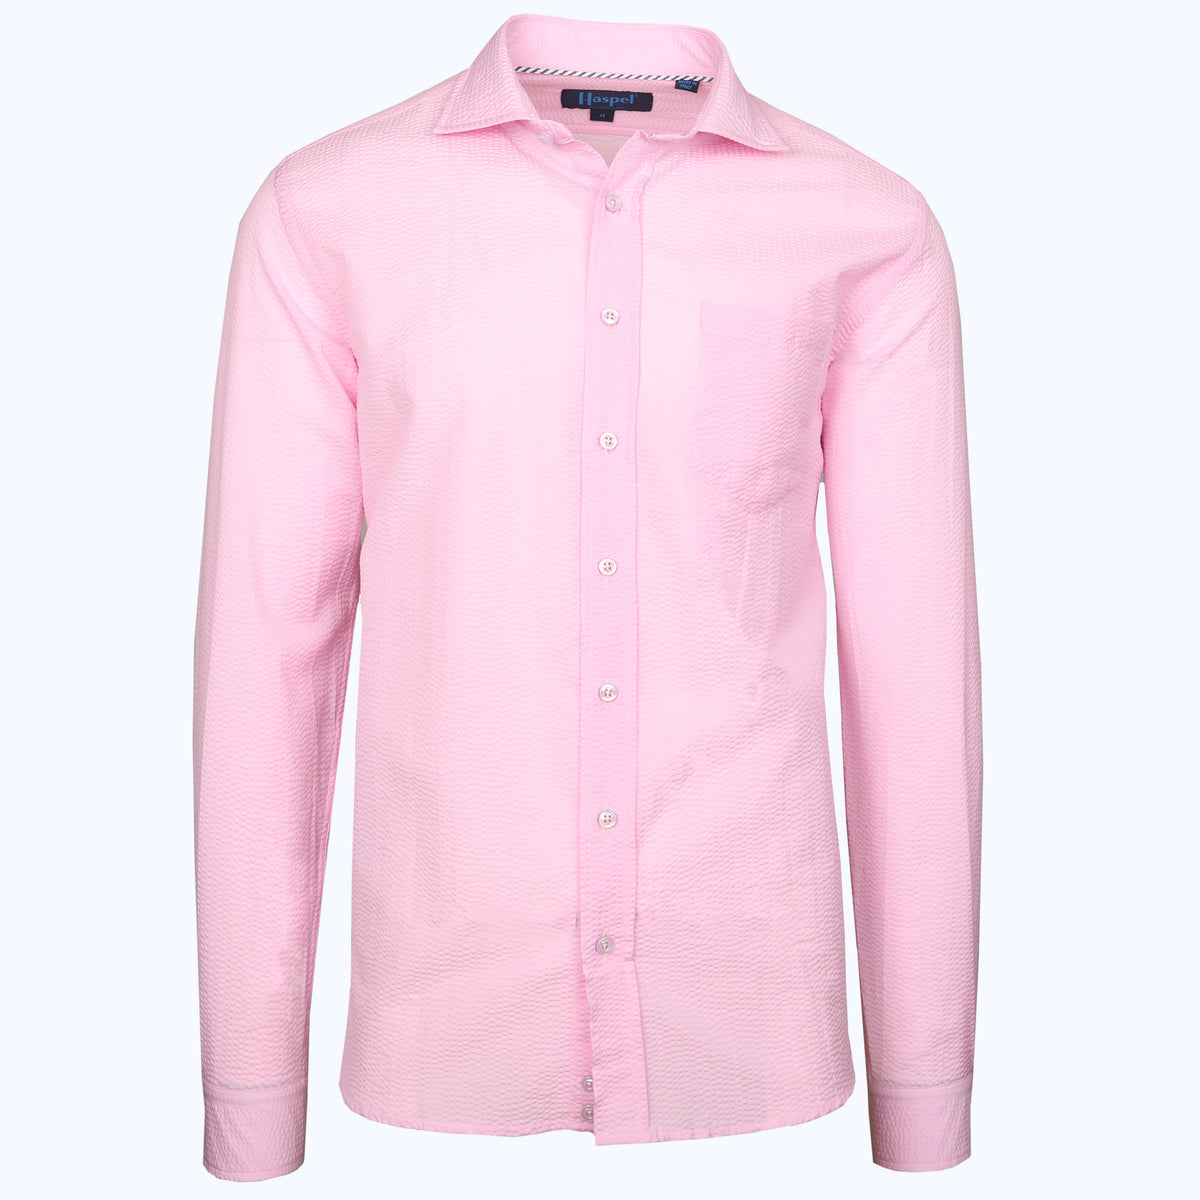 Chartres Long Sleeve Solid Pink Seersucker